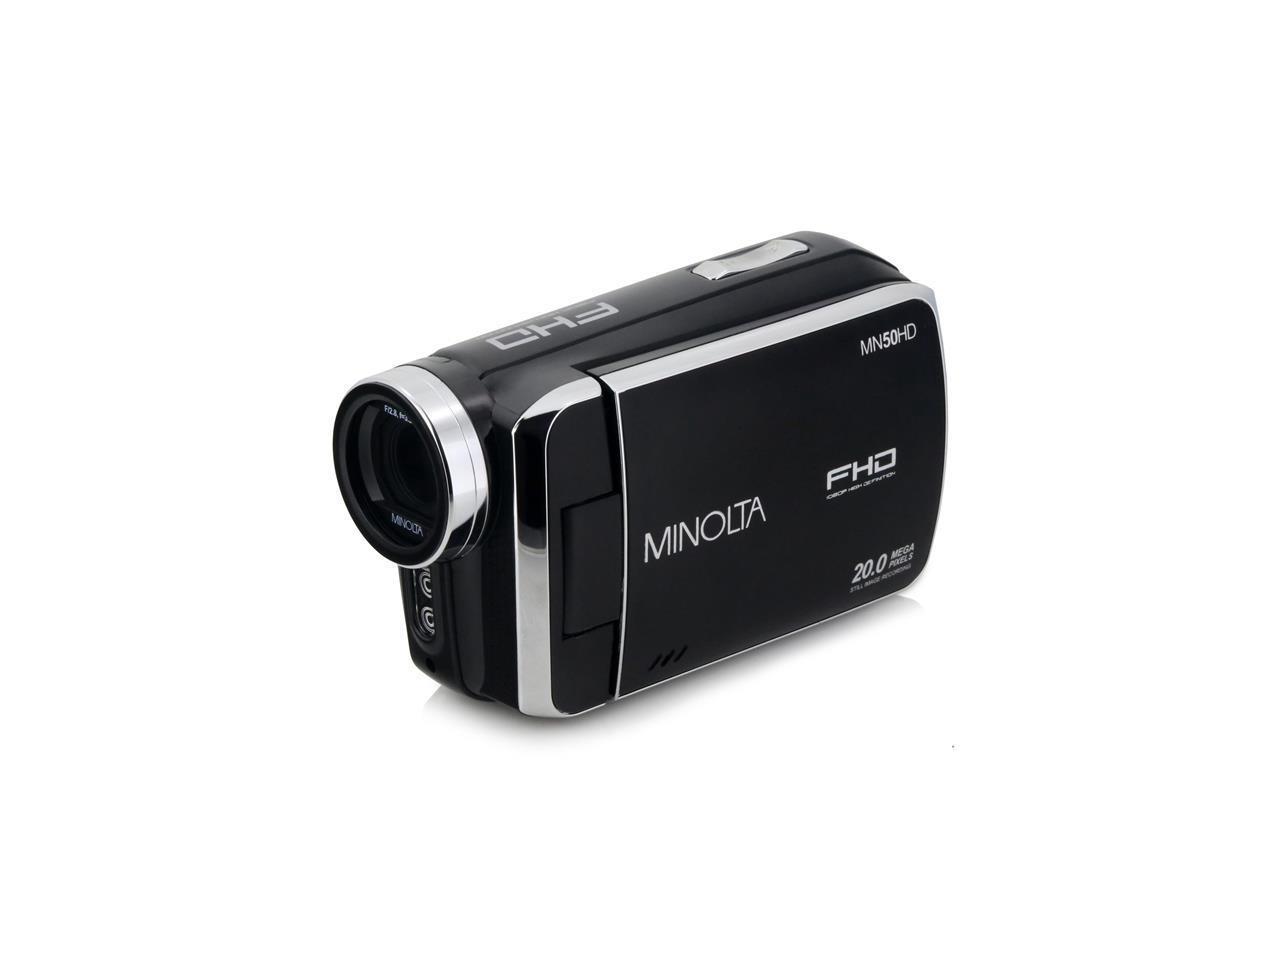 Minolta MN50HD 1080p Full HD 20MP Digital Camcorder, Black #MN50HD-BK